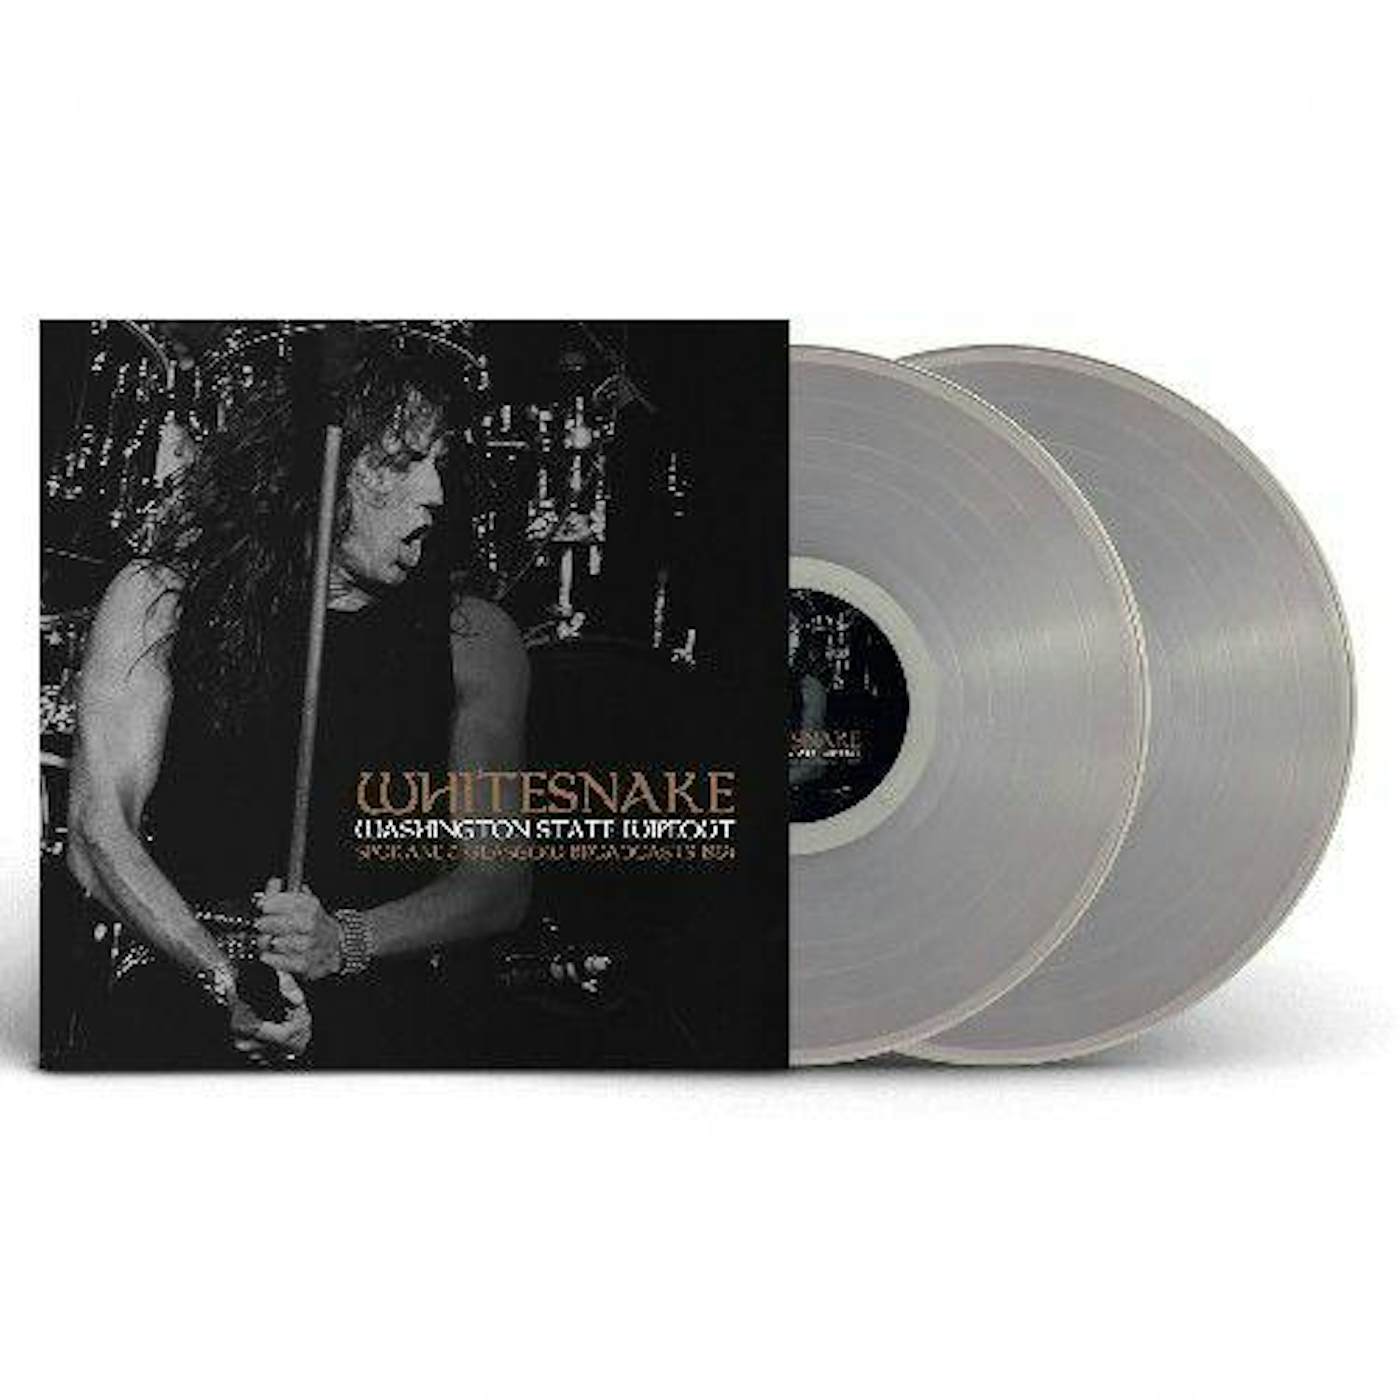 Whitesnake Washington State Wipeout (Clear Vinyl Record/2lp)